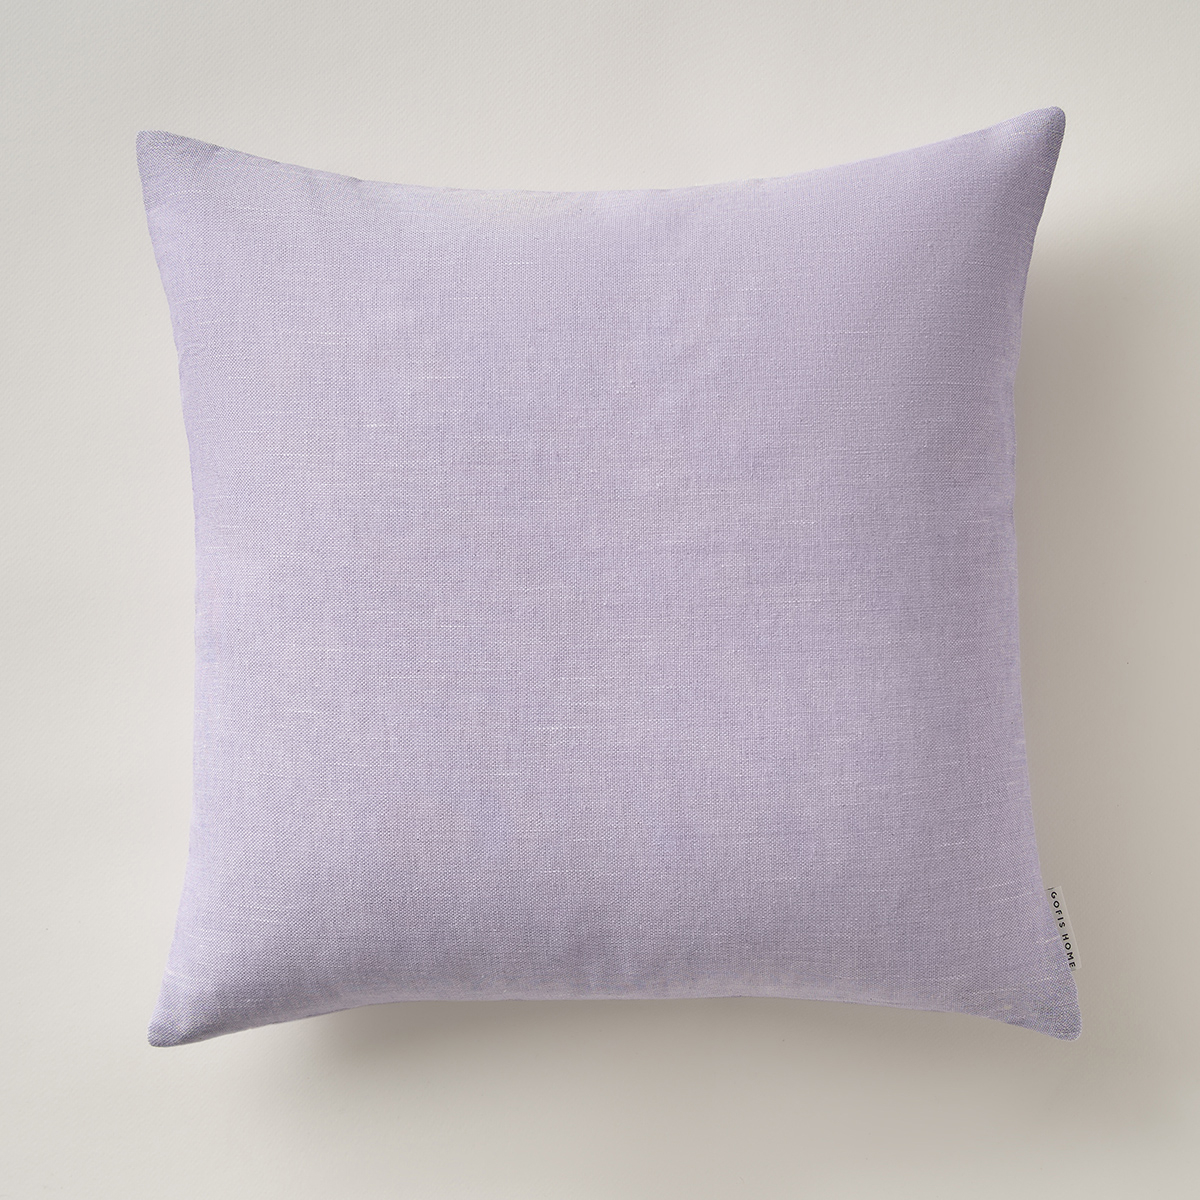 Διακοσμητική Μαξιλαροθήκη (43×43) Gofis Home Aries Lavender 511/19 241980